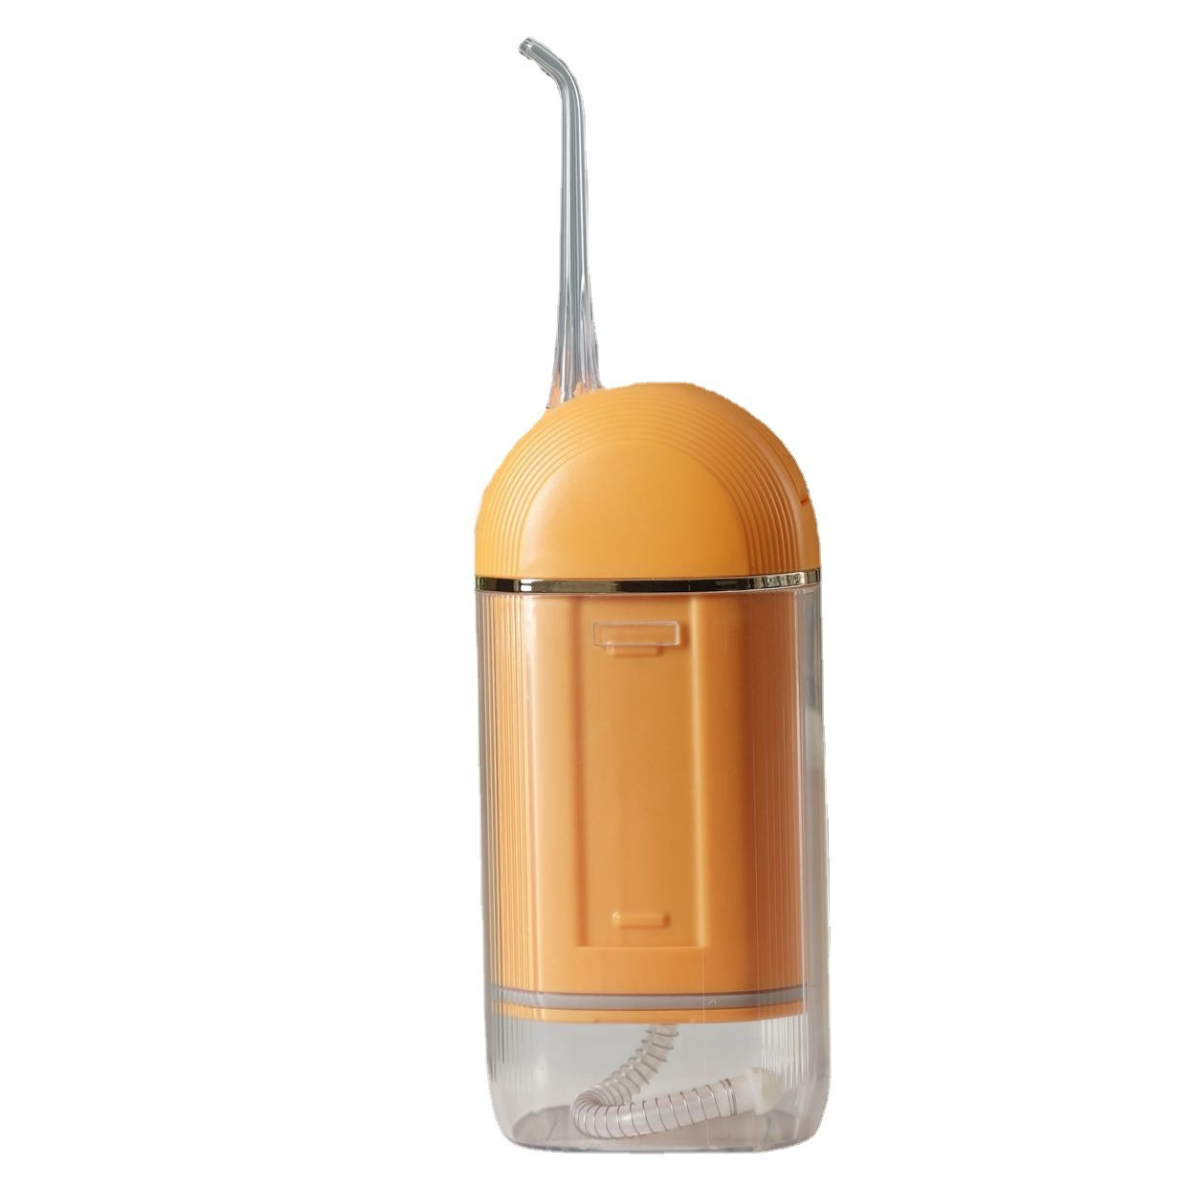 UWOT Orange Munddusche wasserdicht, Elektrischer und einfach verstaubar, Hochfrequenz-Pulswasserfluss,orange Zahnspüler: